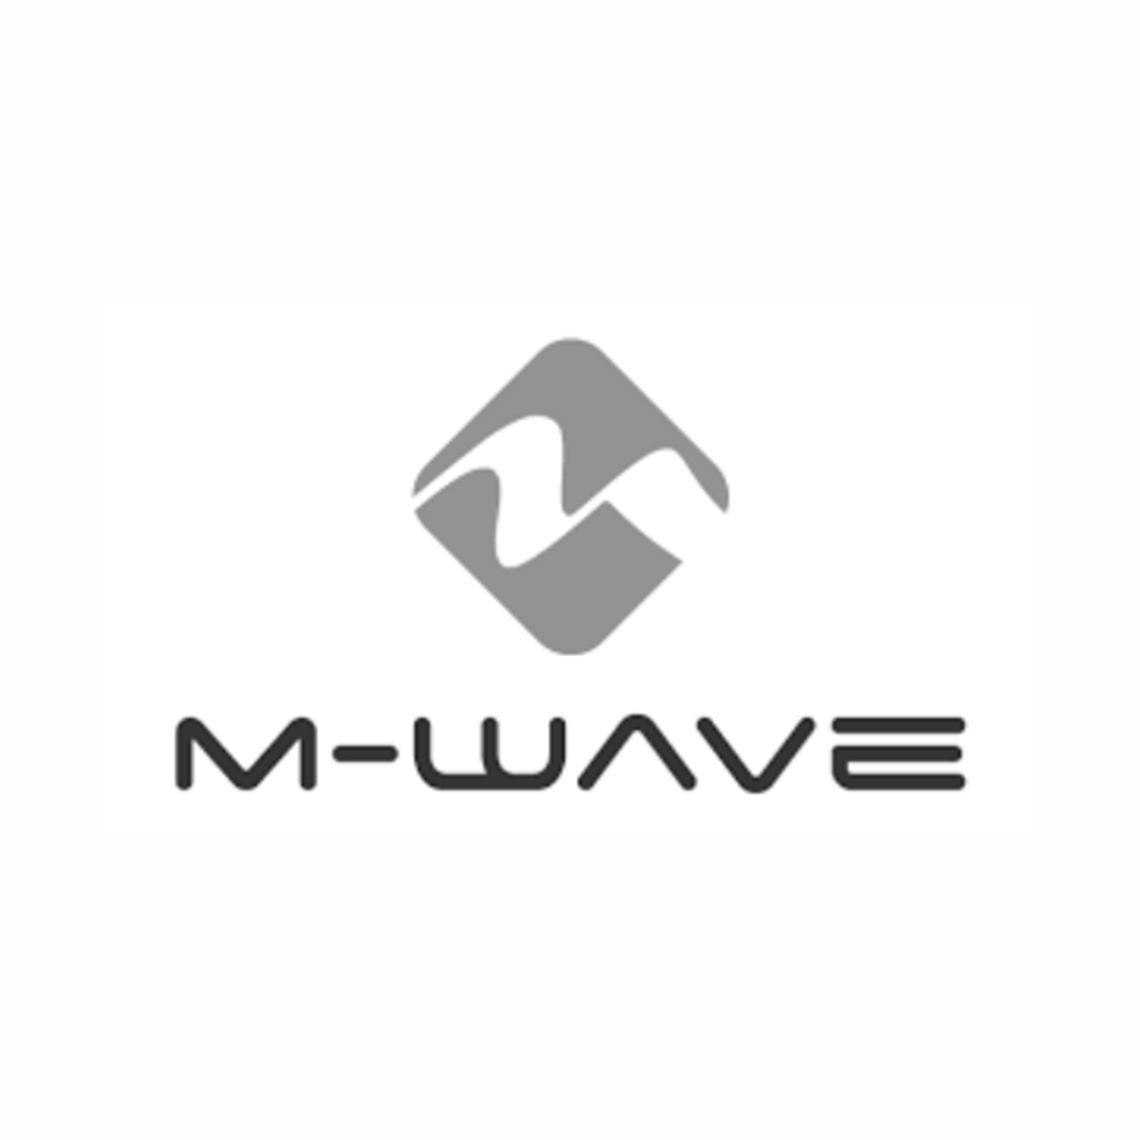 M-wave